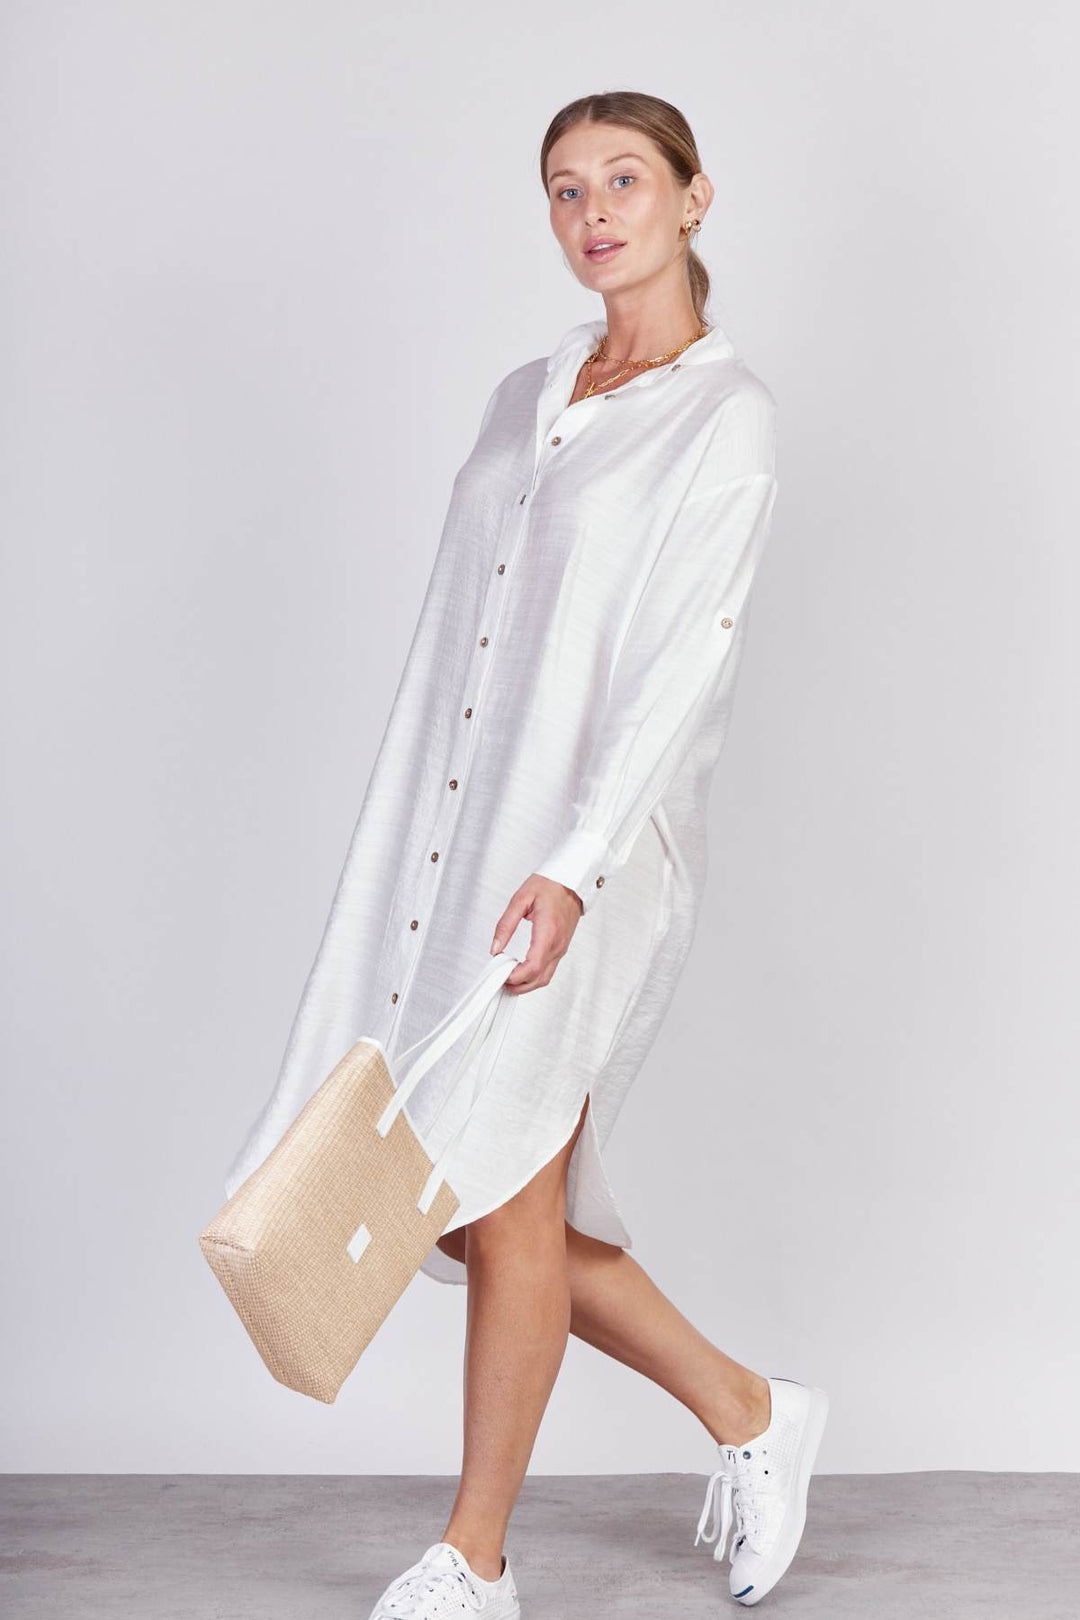 שמלת סי בצבע לבן - Neta Efrati